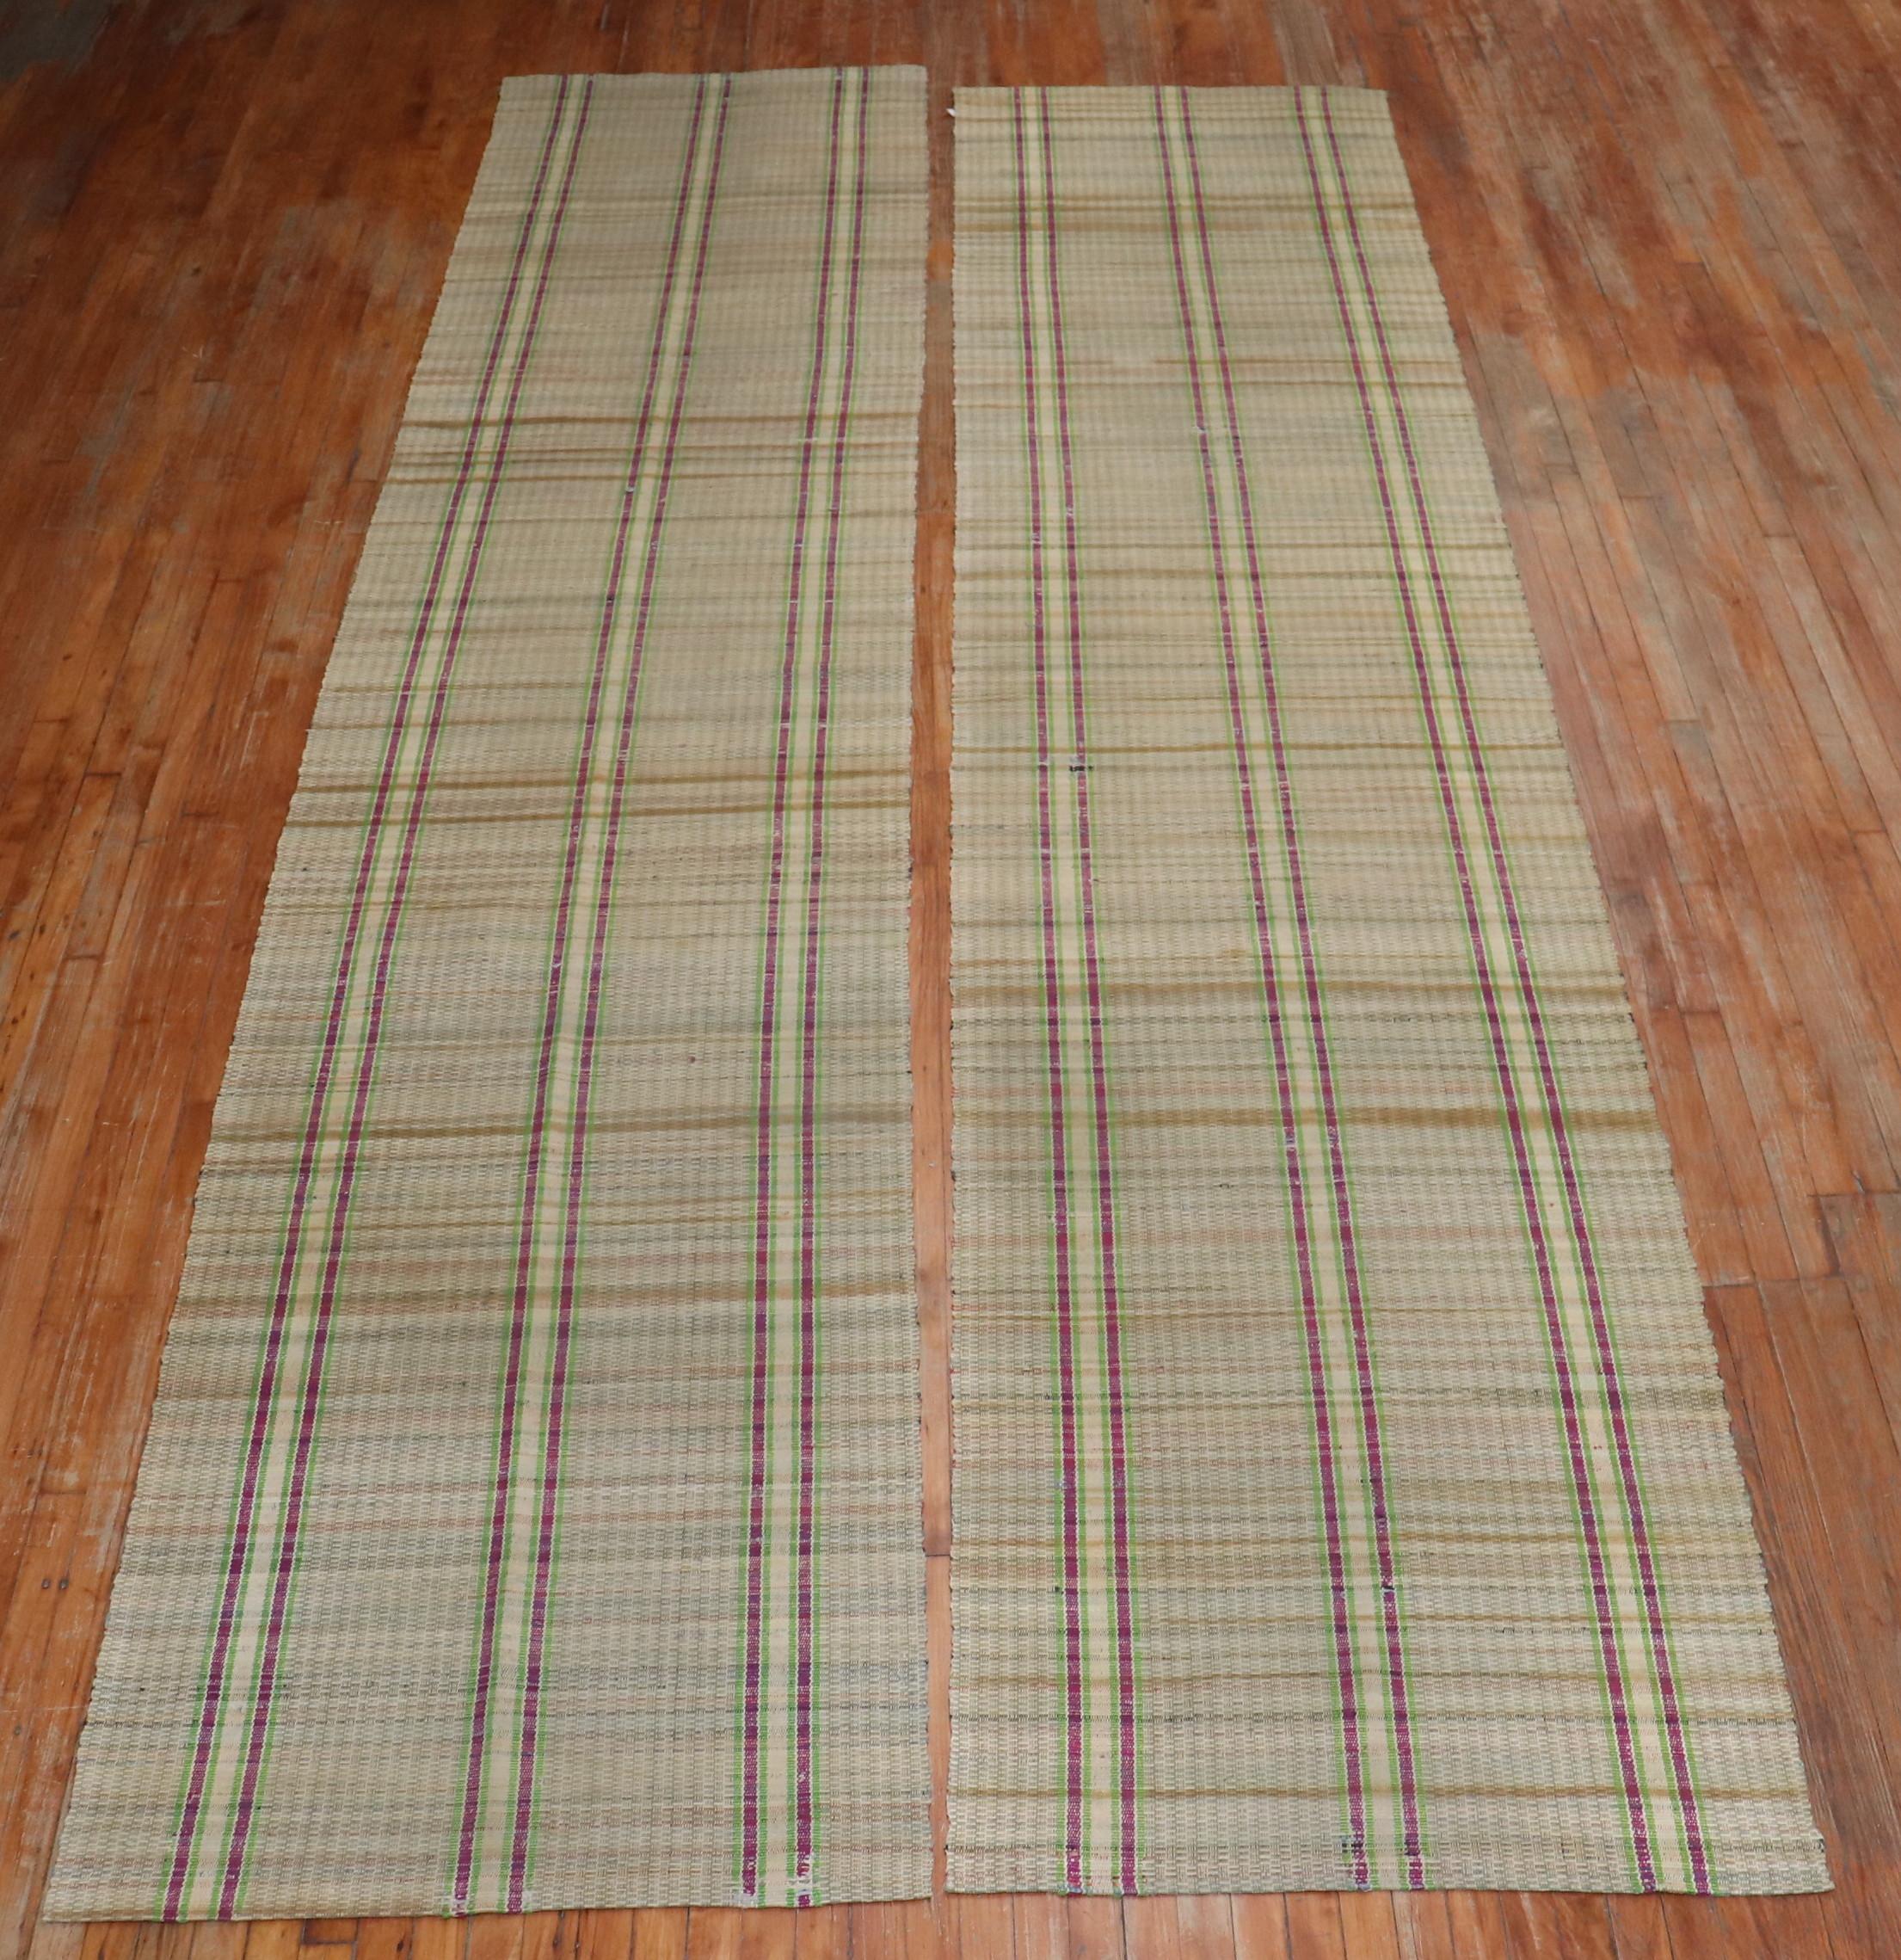 Un rare ensemble de tapis en chiffon assorti contenant un motif à carreaux sur un fond couleur paille, datant du milieu du 20e siècle

Mesures : 3'2